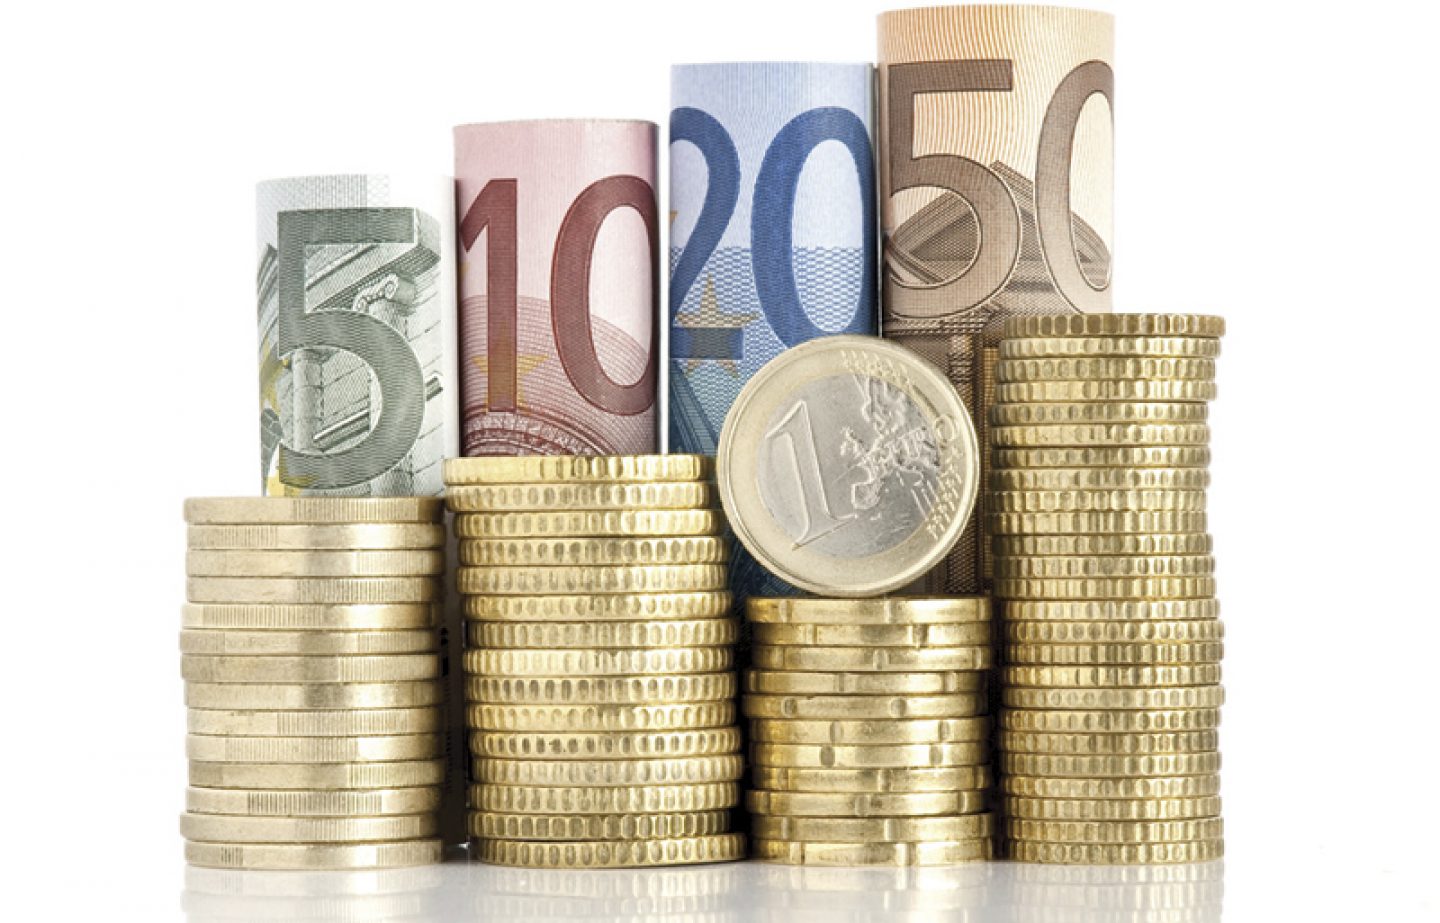 Prosječna plaća u Zagrebu je 6500 kuna, no u BANKARSTVU je prosjek 9600 kuna NETO!